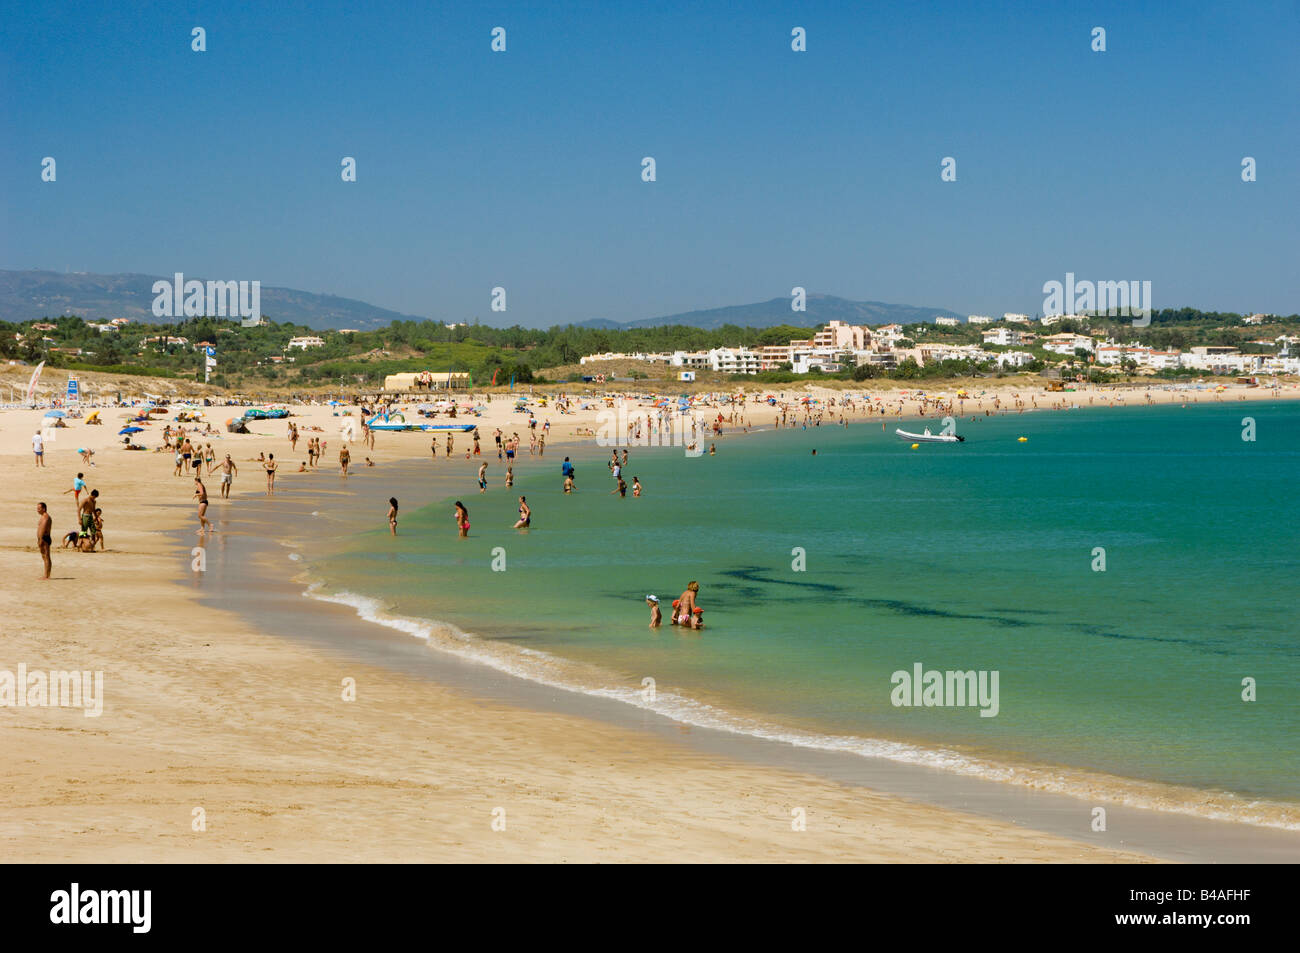 Meia Praia Beach, Lagos, Algarve, Portugal Stock Photo - Alamy